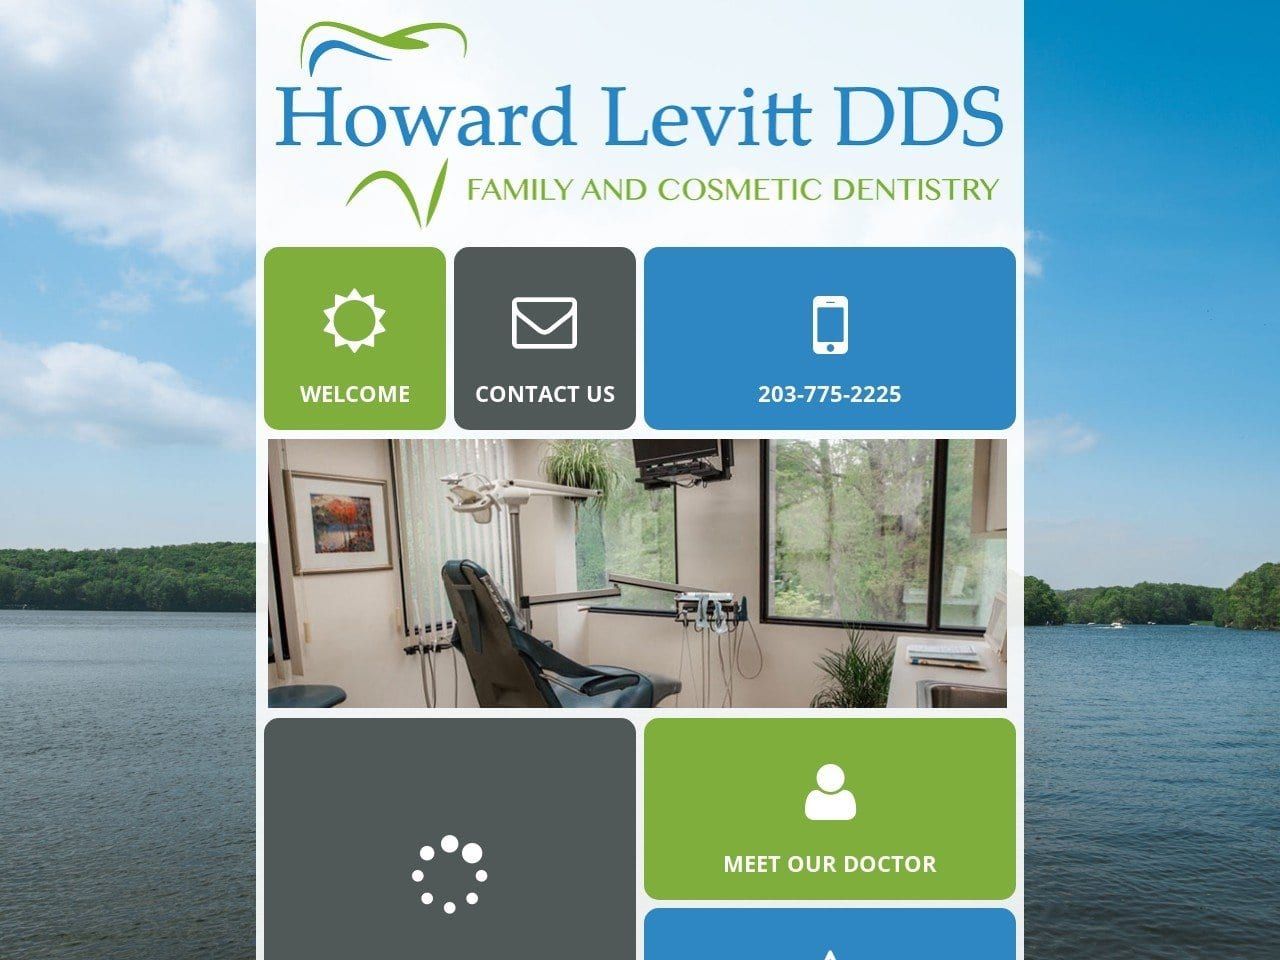 Howard Levitt DDS Website Screenshot from howardlevittdds.com